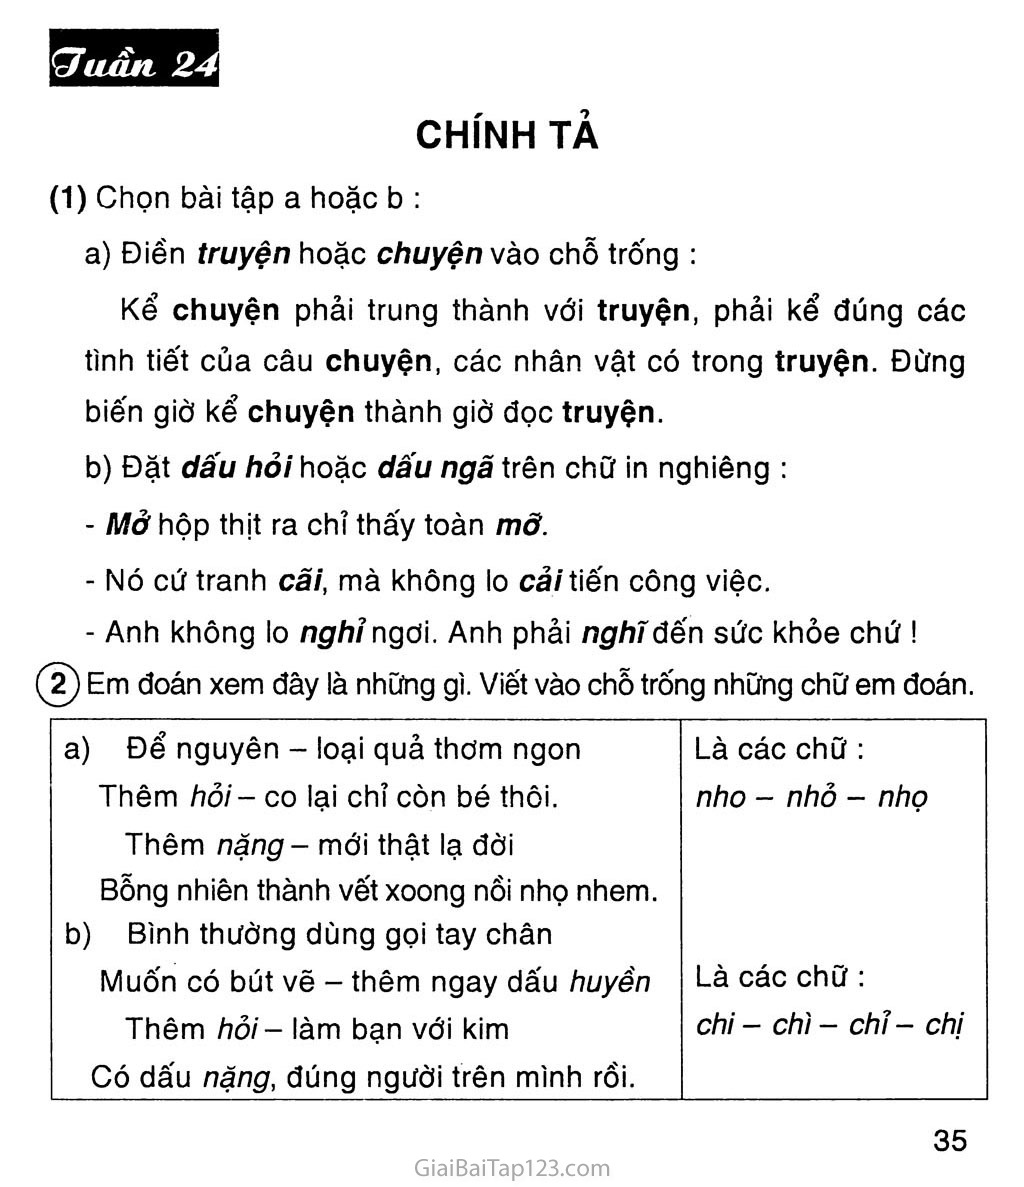 Vở bài tập Tiếng Việt lớp 4 tập 2 trang 79, 80